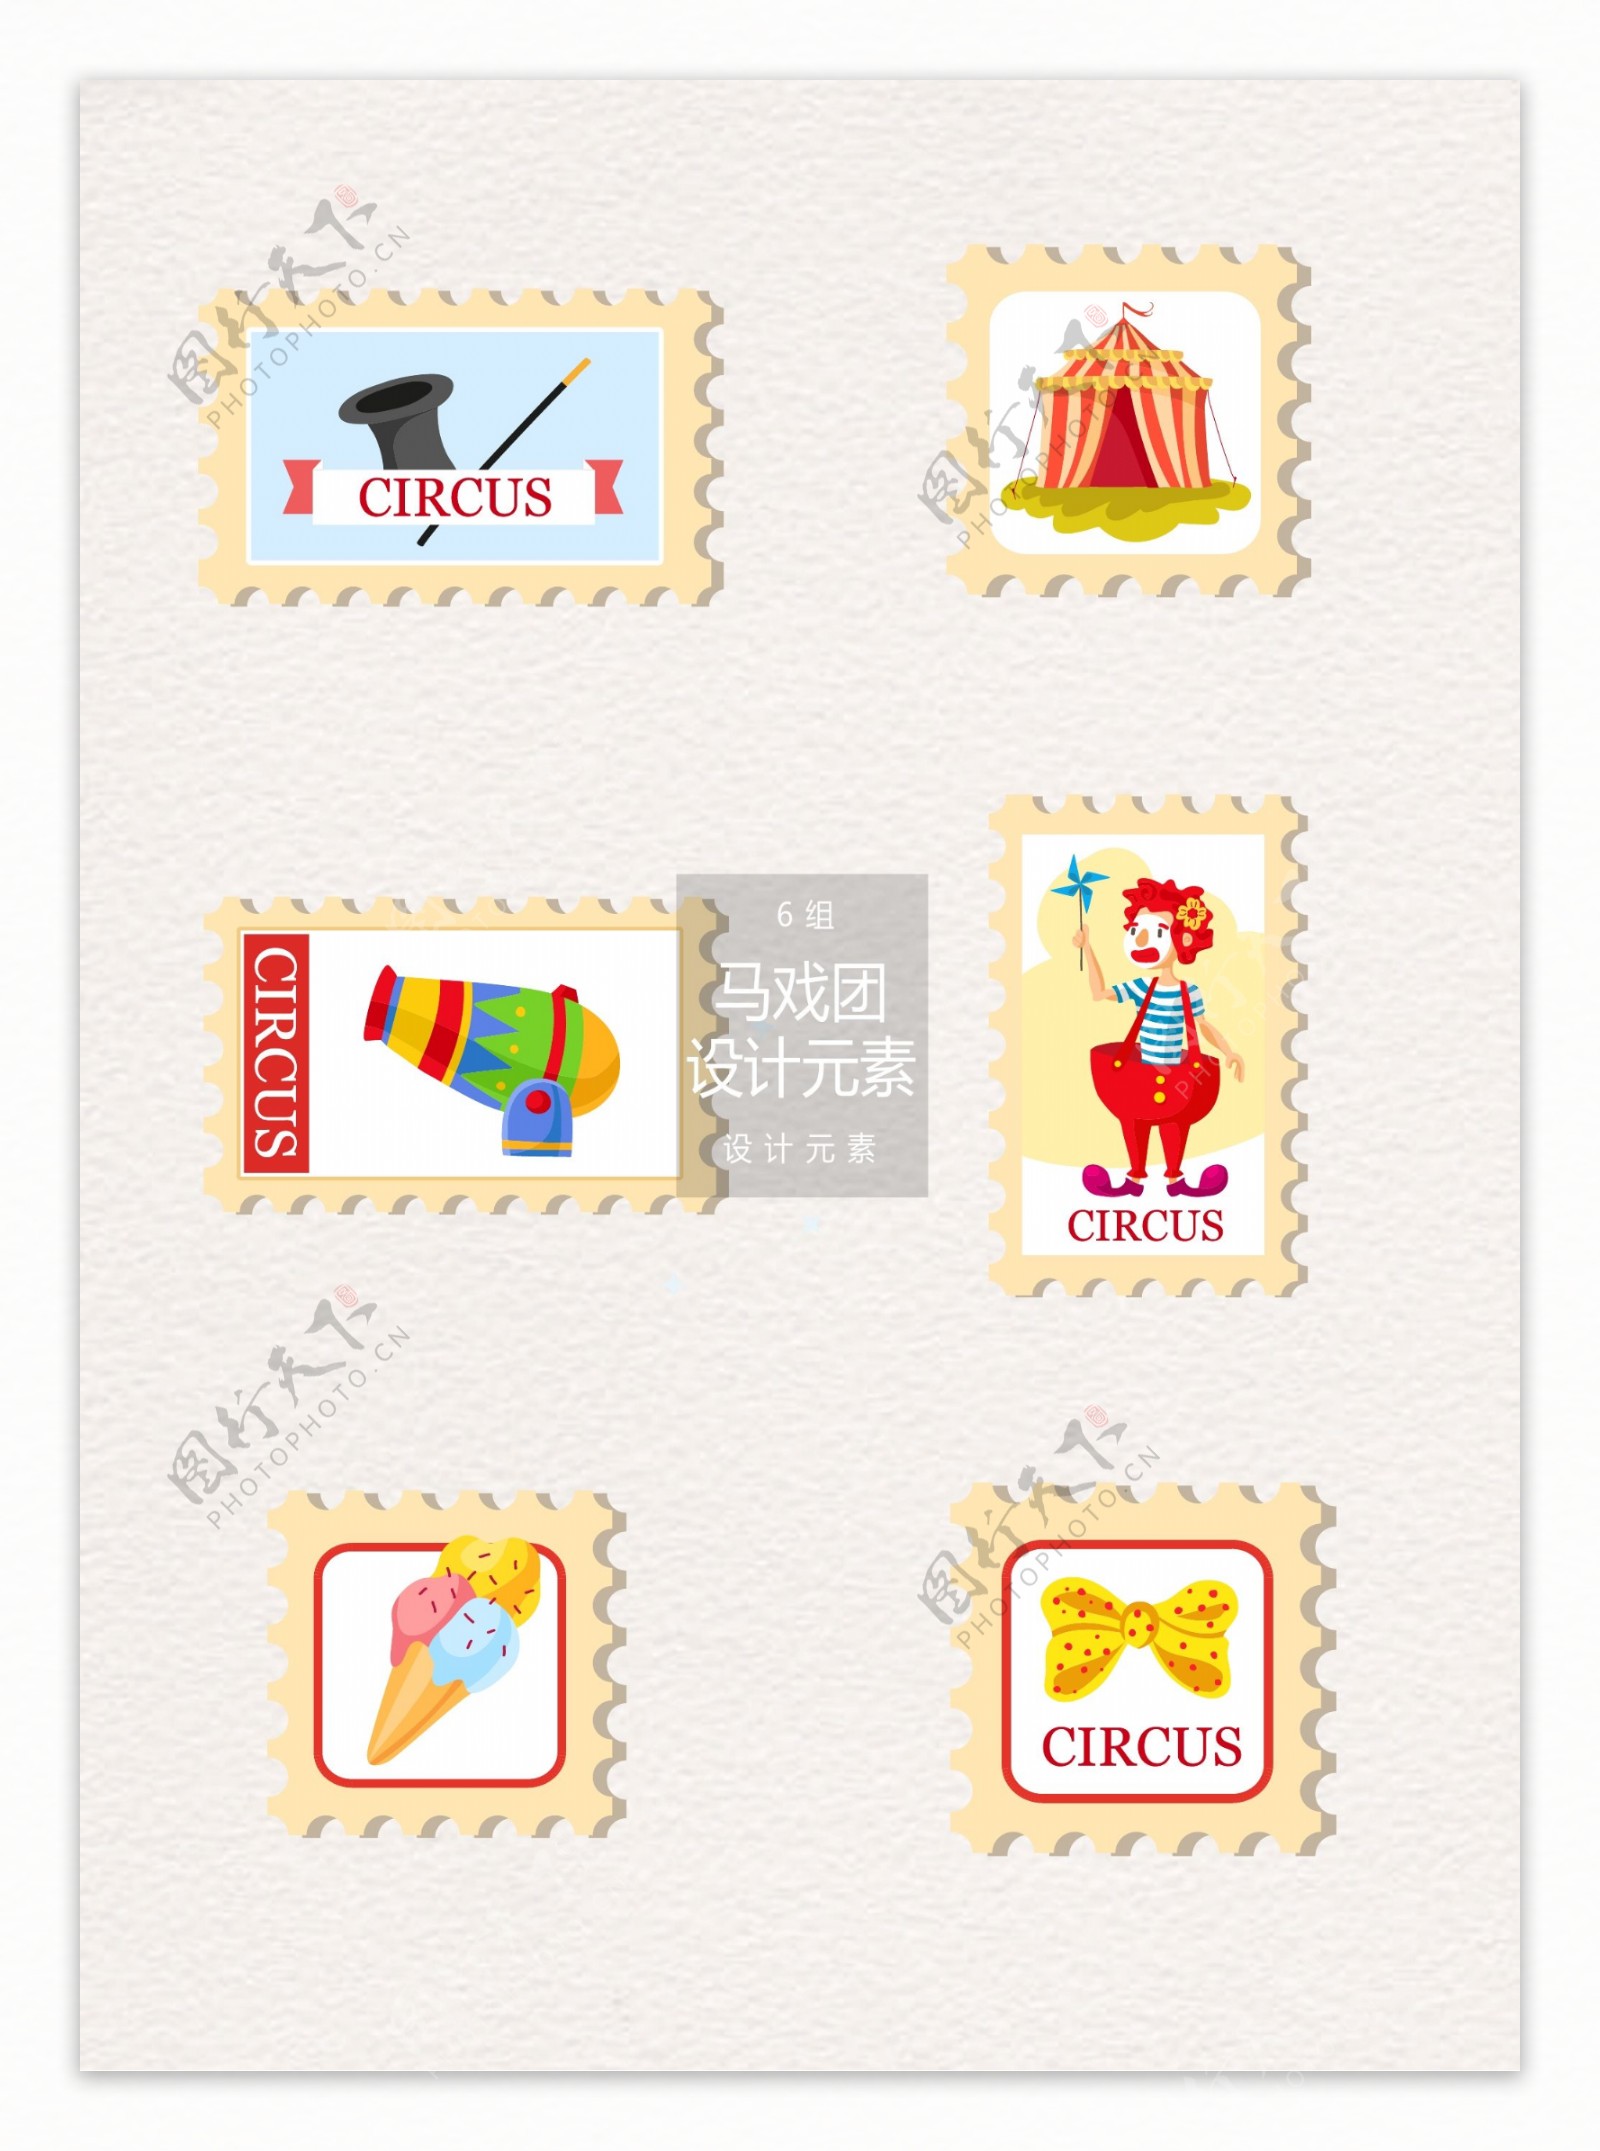 马戏团邮票设计元素